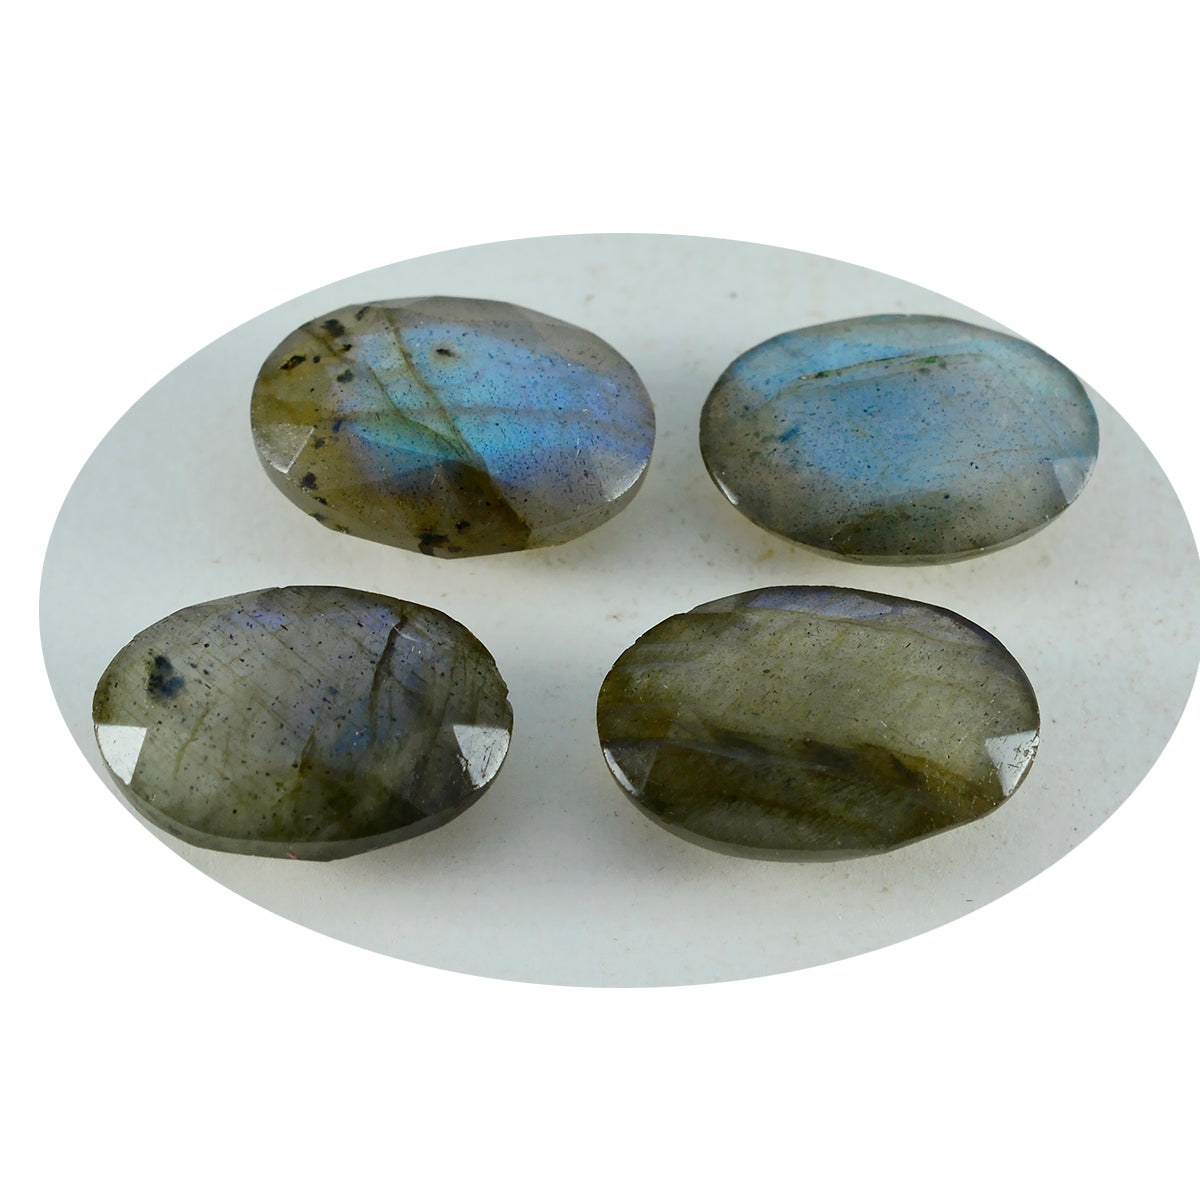 riyogems 1 шт. натуральный серый лабрадорит ограненный 8x10 мм овальной формы красивое качество свободный драгоценный камень